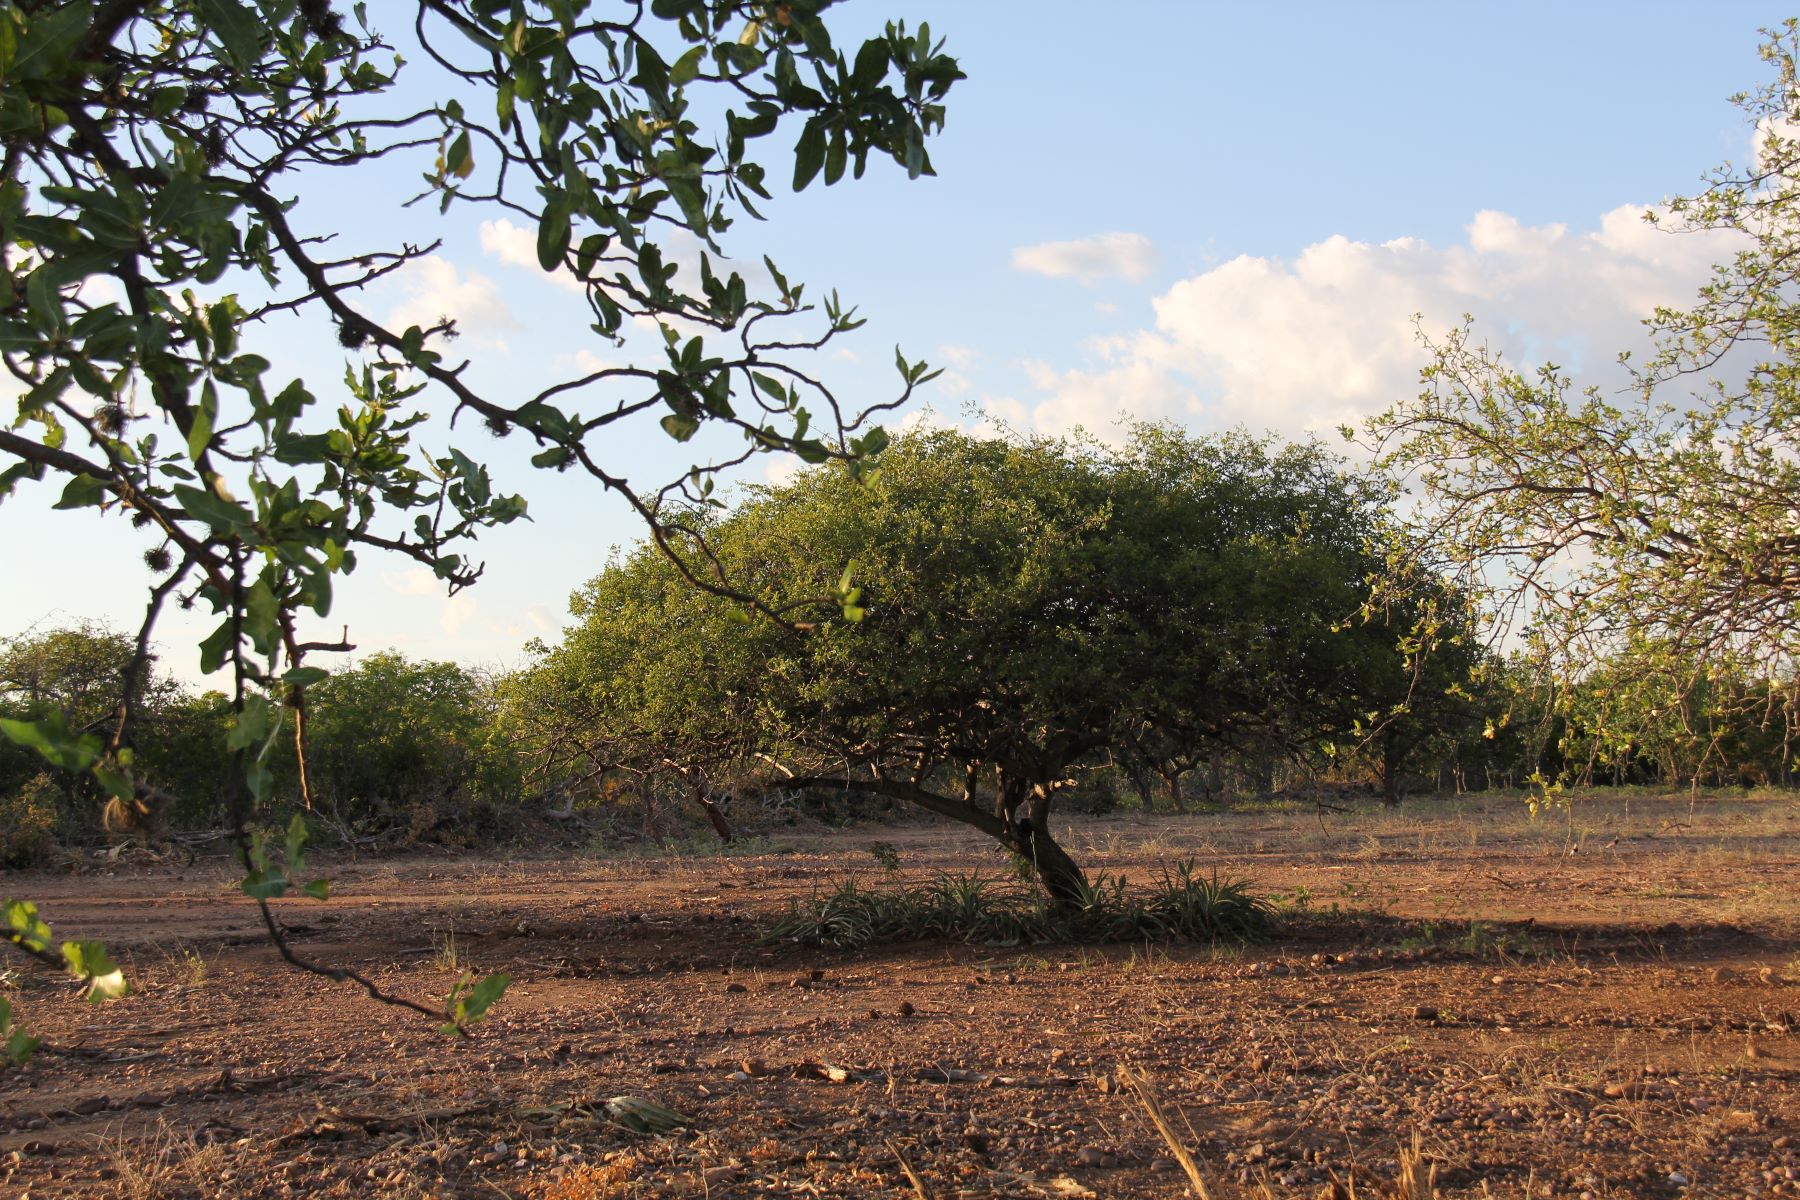 Umbuzeiro, árvores símbolo da Caatinga, é reconhecida pela sua resistência aos grandes períodos de escassez de chuvas: com preservação, fruto serve para gerar renda no semiárido (Foto: Adriano Alves)